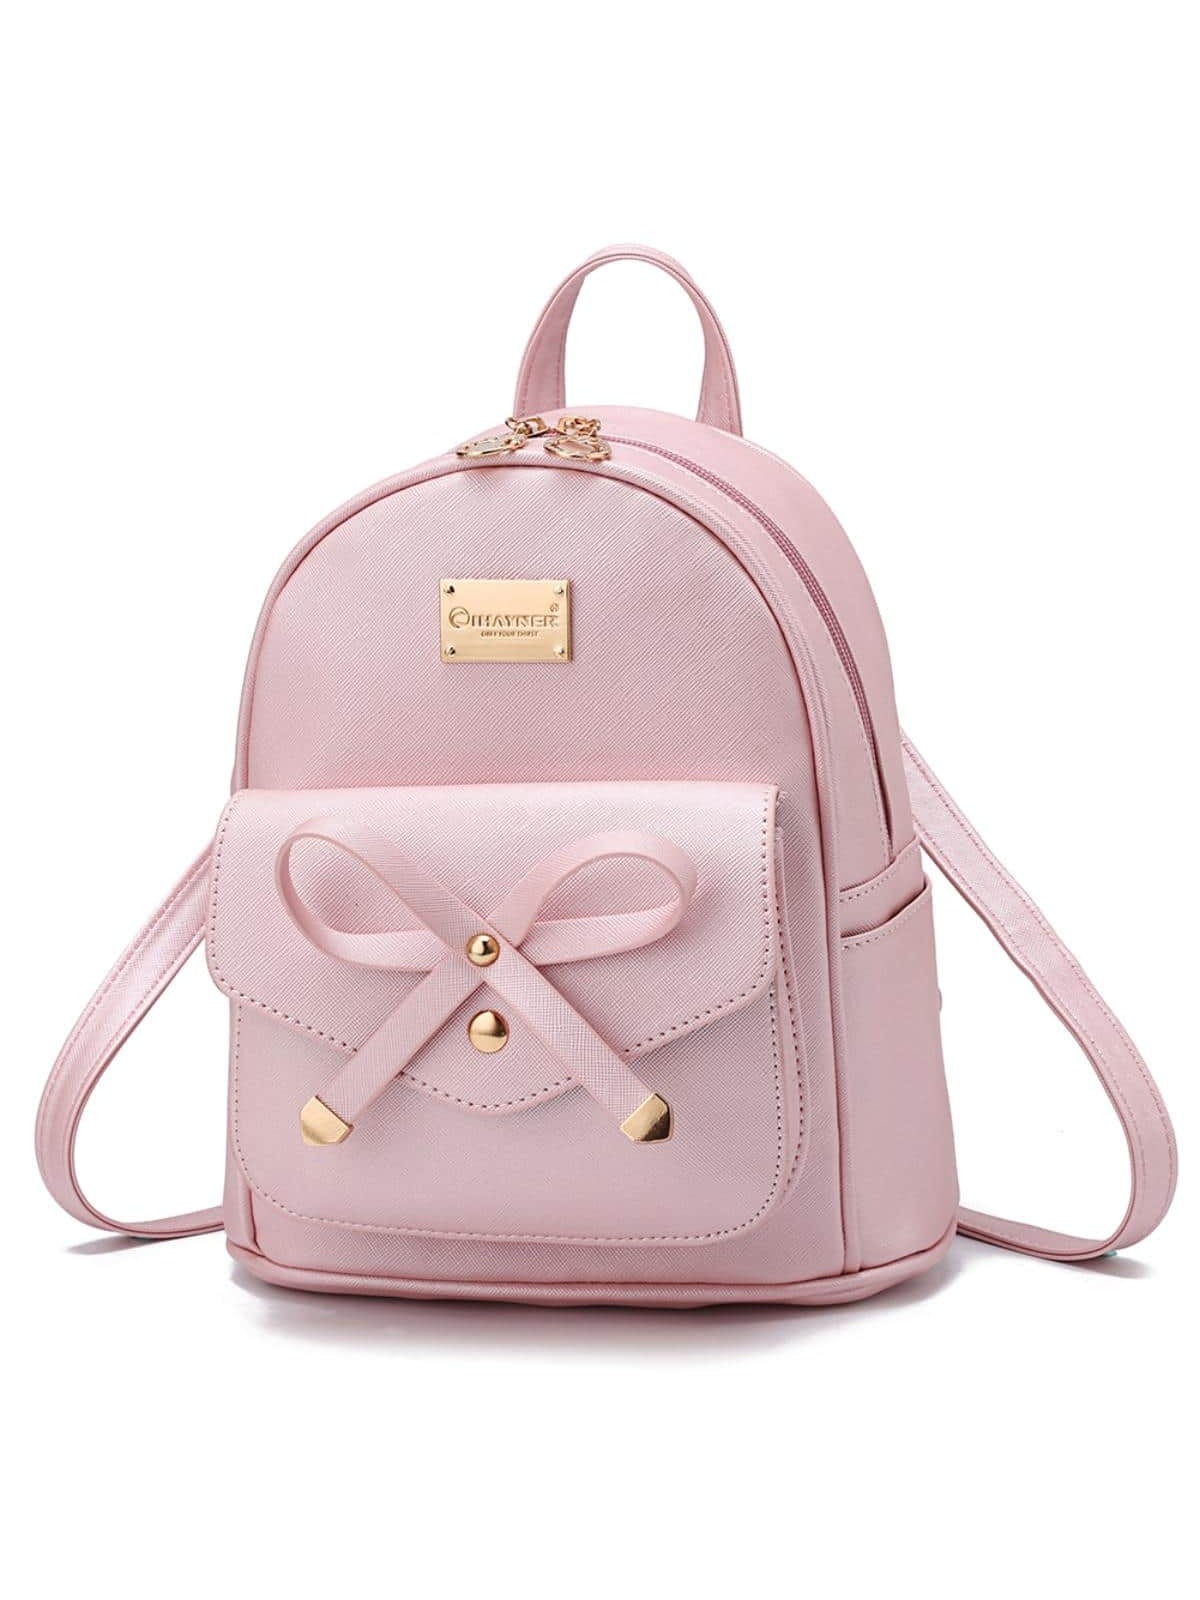 I IHAYNER, розовое золото рюкзак женский с принтом тигра и животных школьный рюкзак для девочек подростков